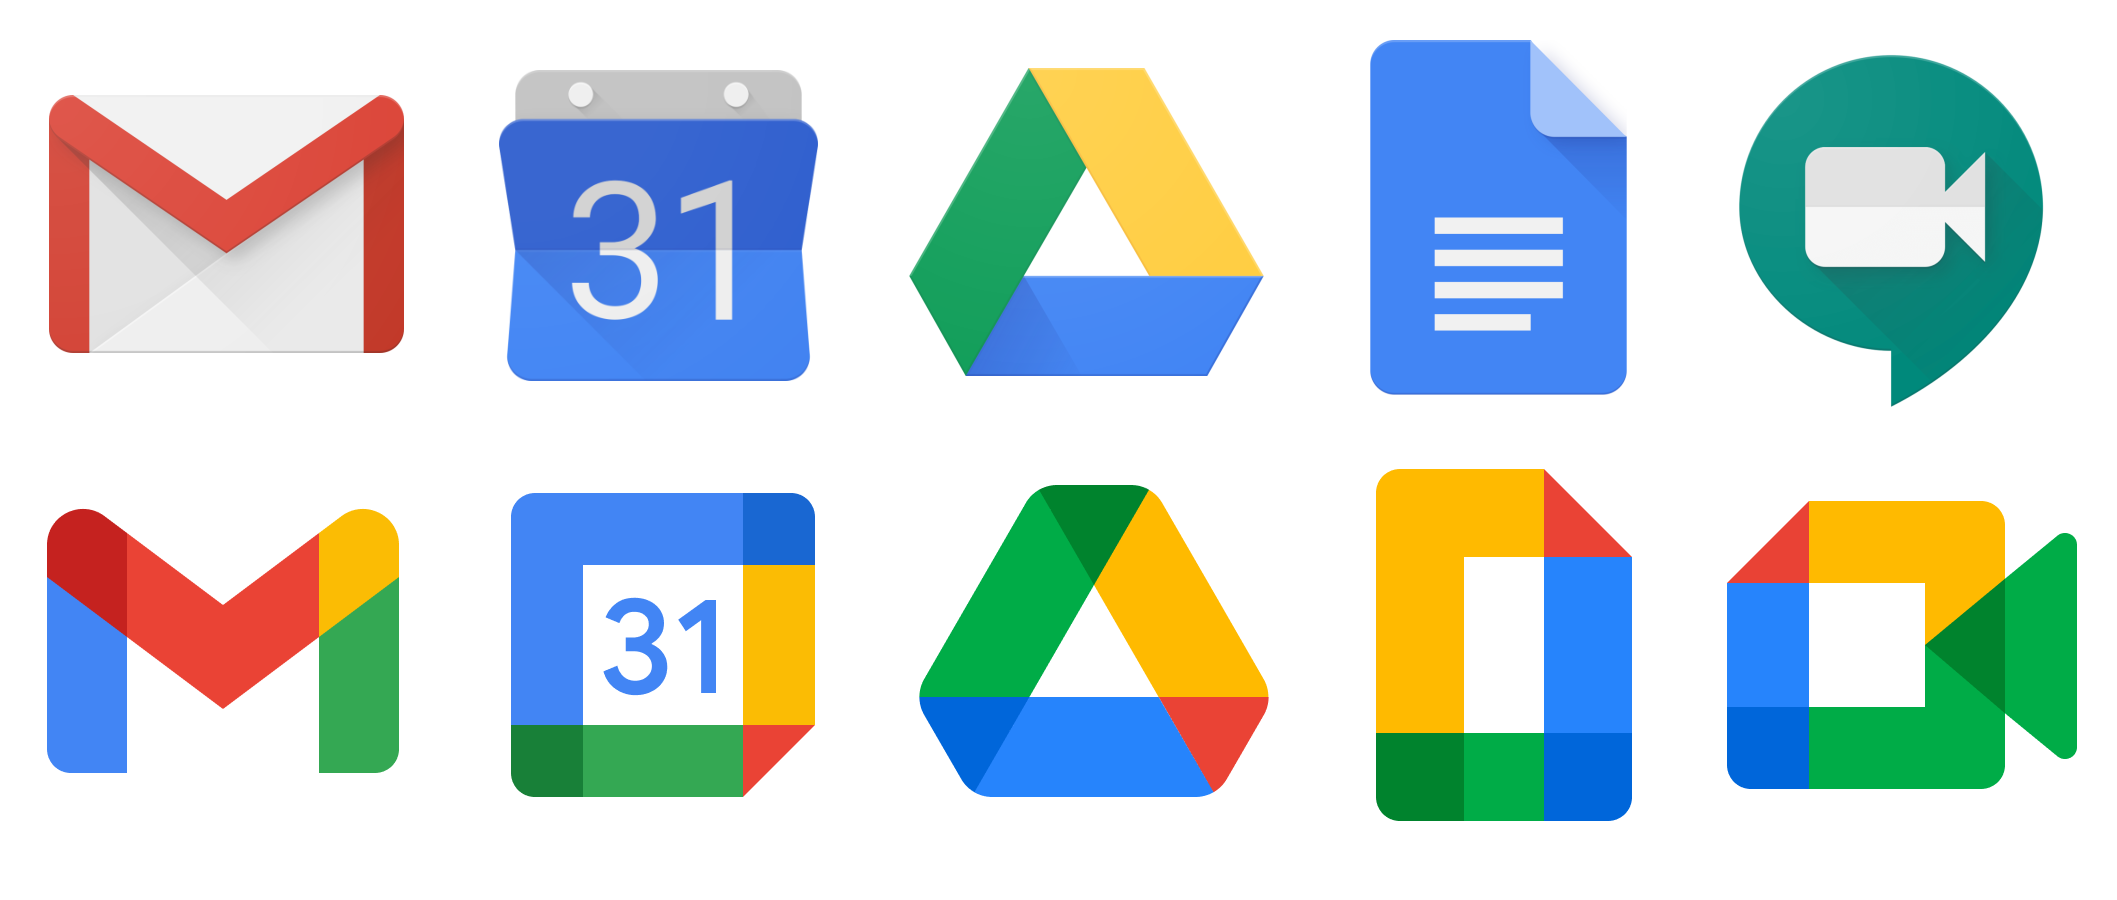 Bộ nhận diện mới của Google: Cạn kiệt sức sáng tạo hay coi thường ...